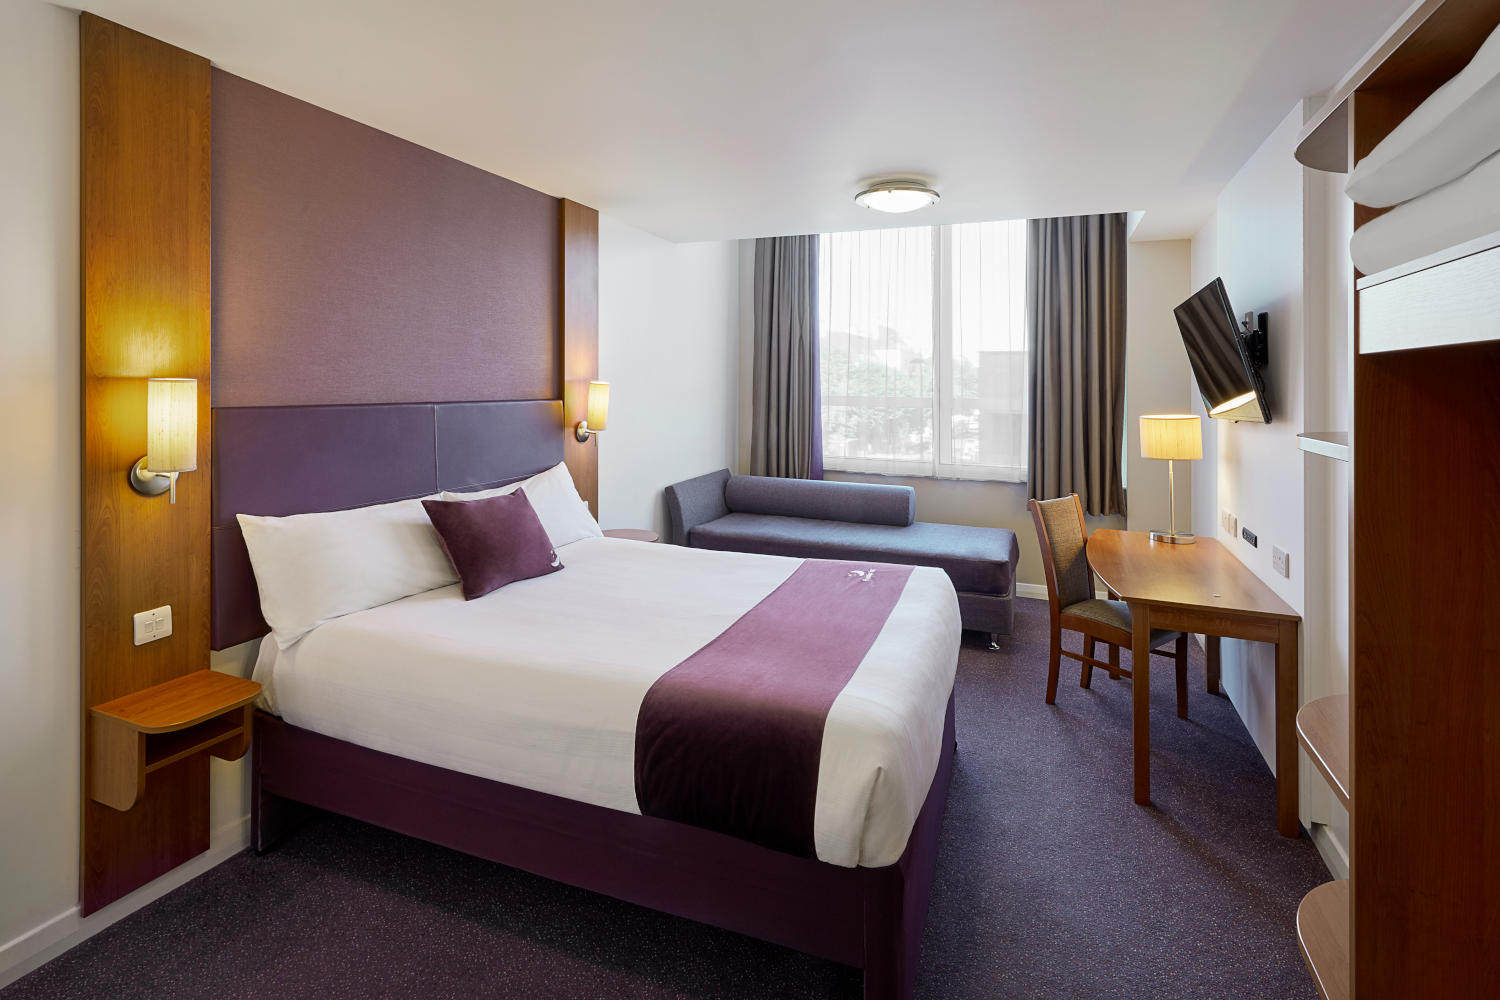 Premier Inn bedroom Premier Inn Bicester hotel Bicester 03333 219288